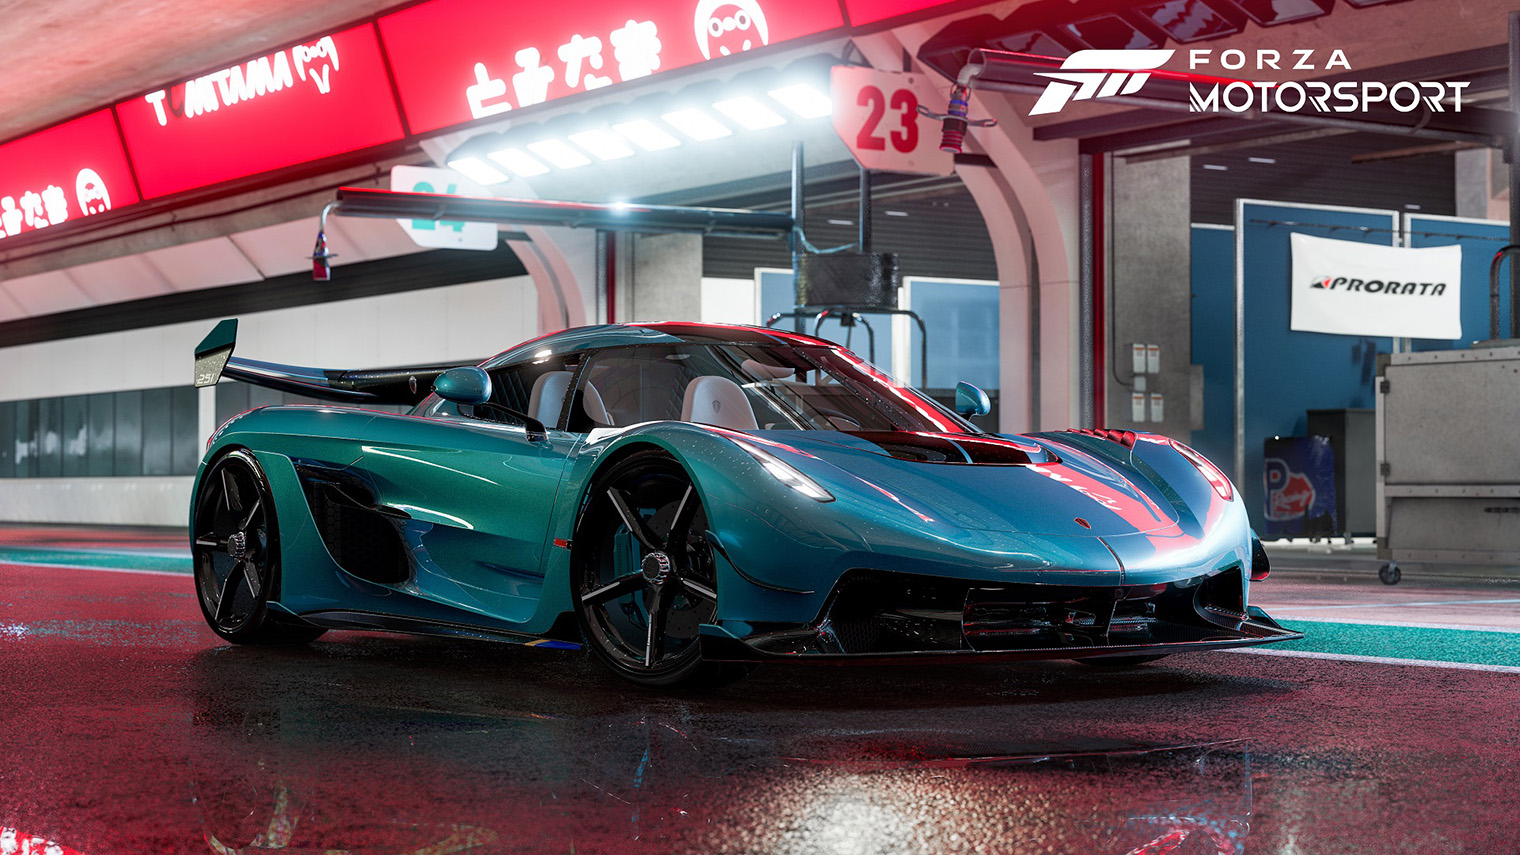 Среди новых особенностей Forza Motorsport — реалистичные отражения на поверхности машин. Источник: Xbox Game Studios